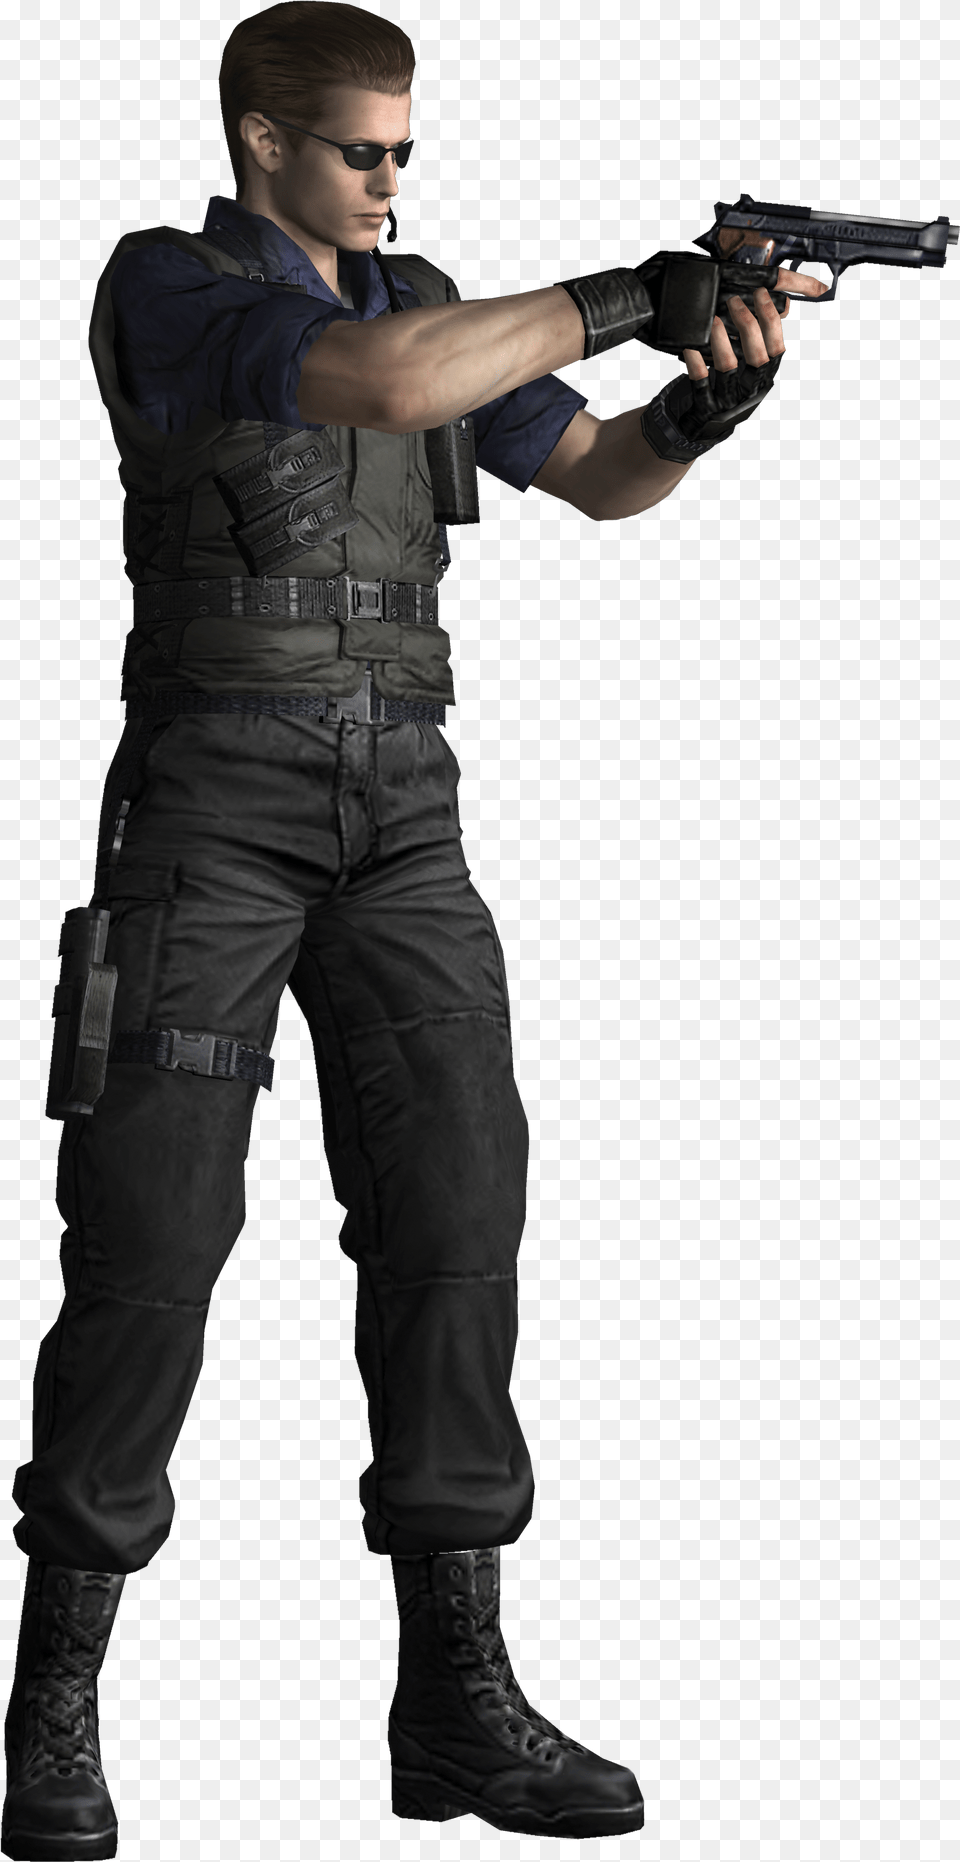 Albert Wesker Resident Evil Remake, Weapon, Handgun, Gun, Firearm Png Image